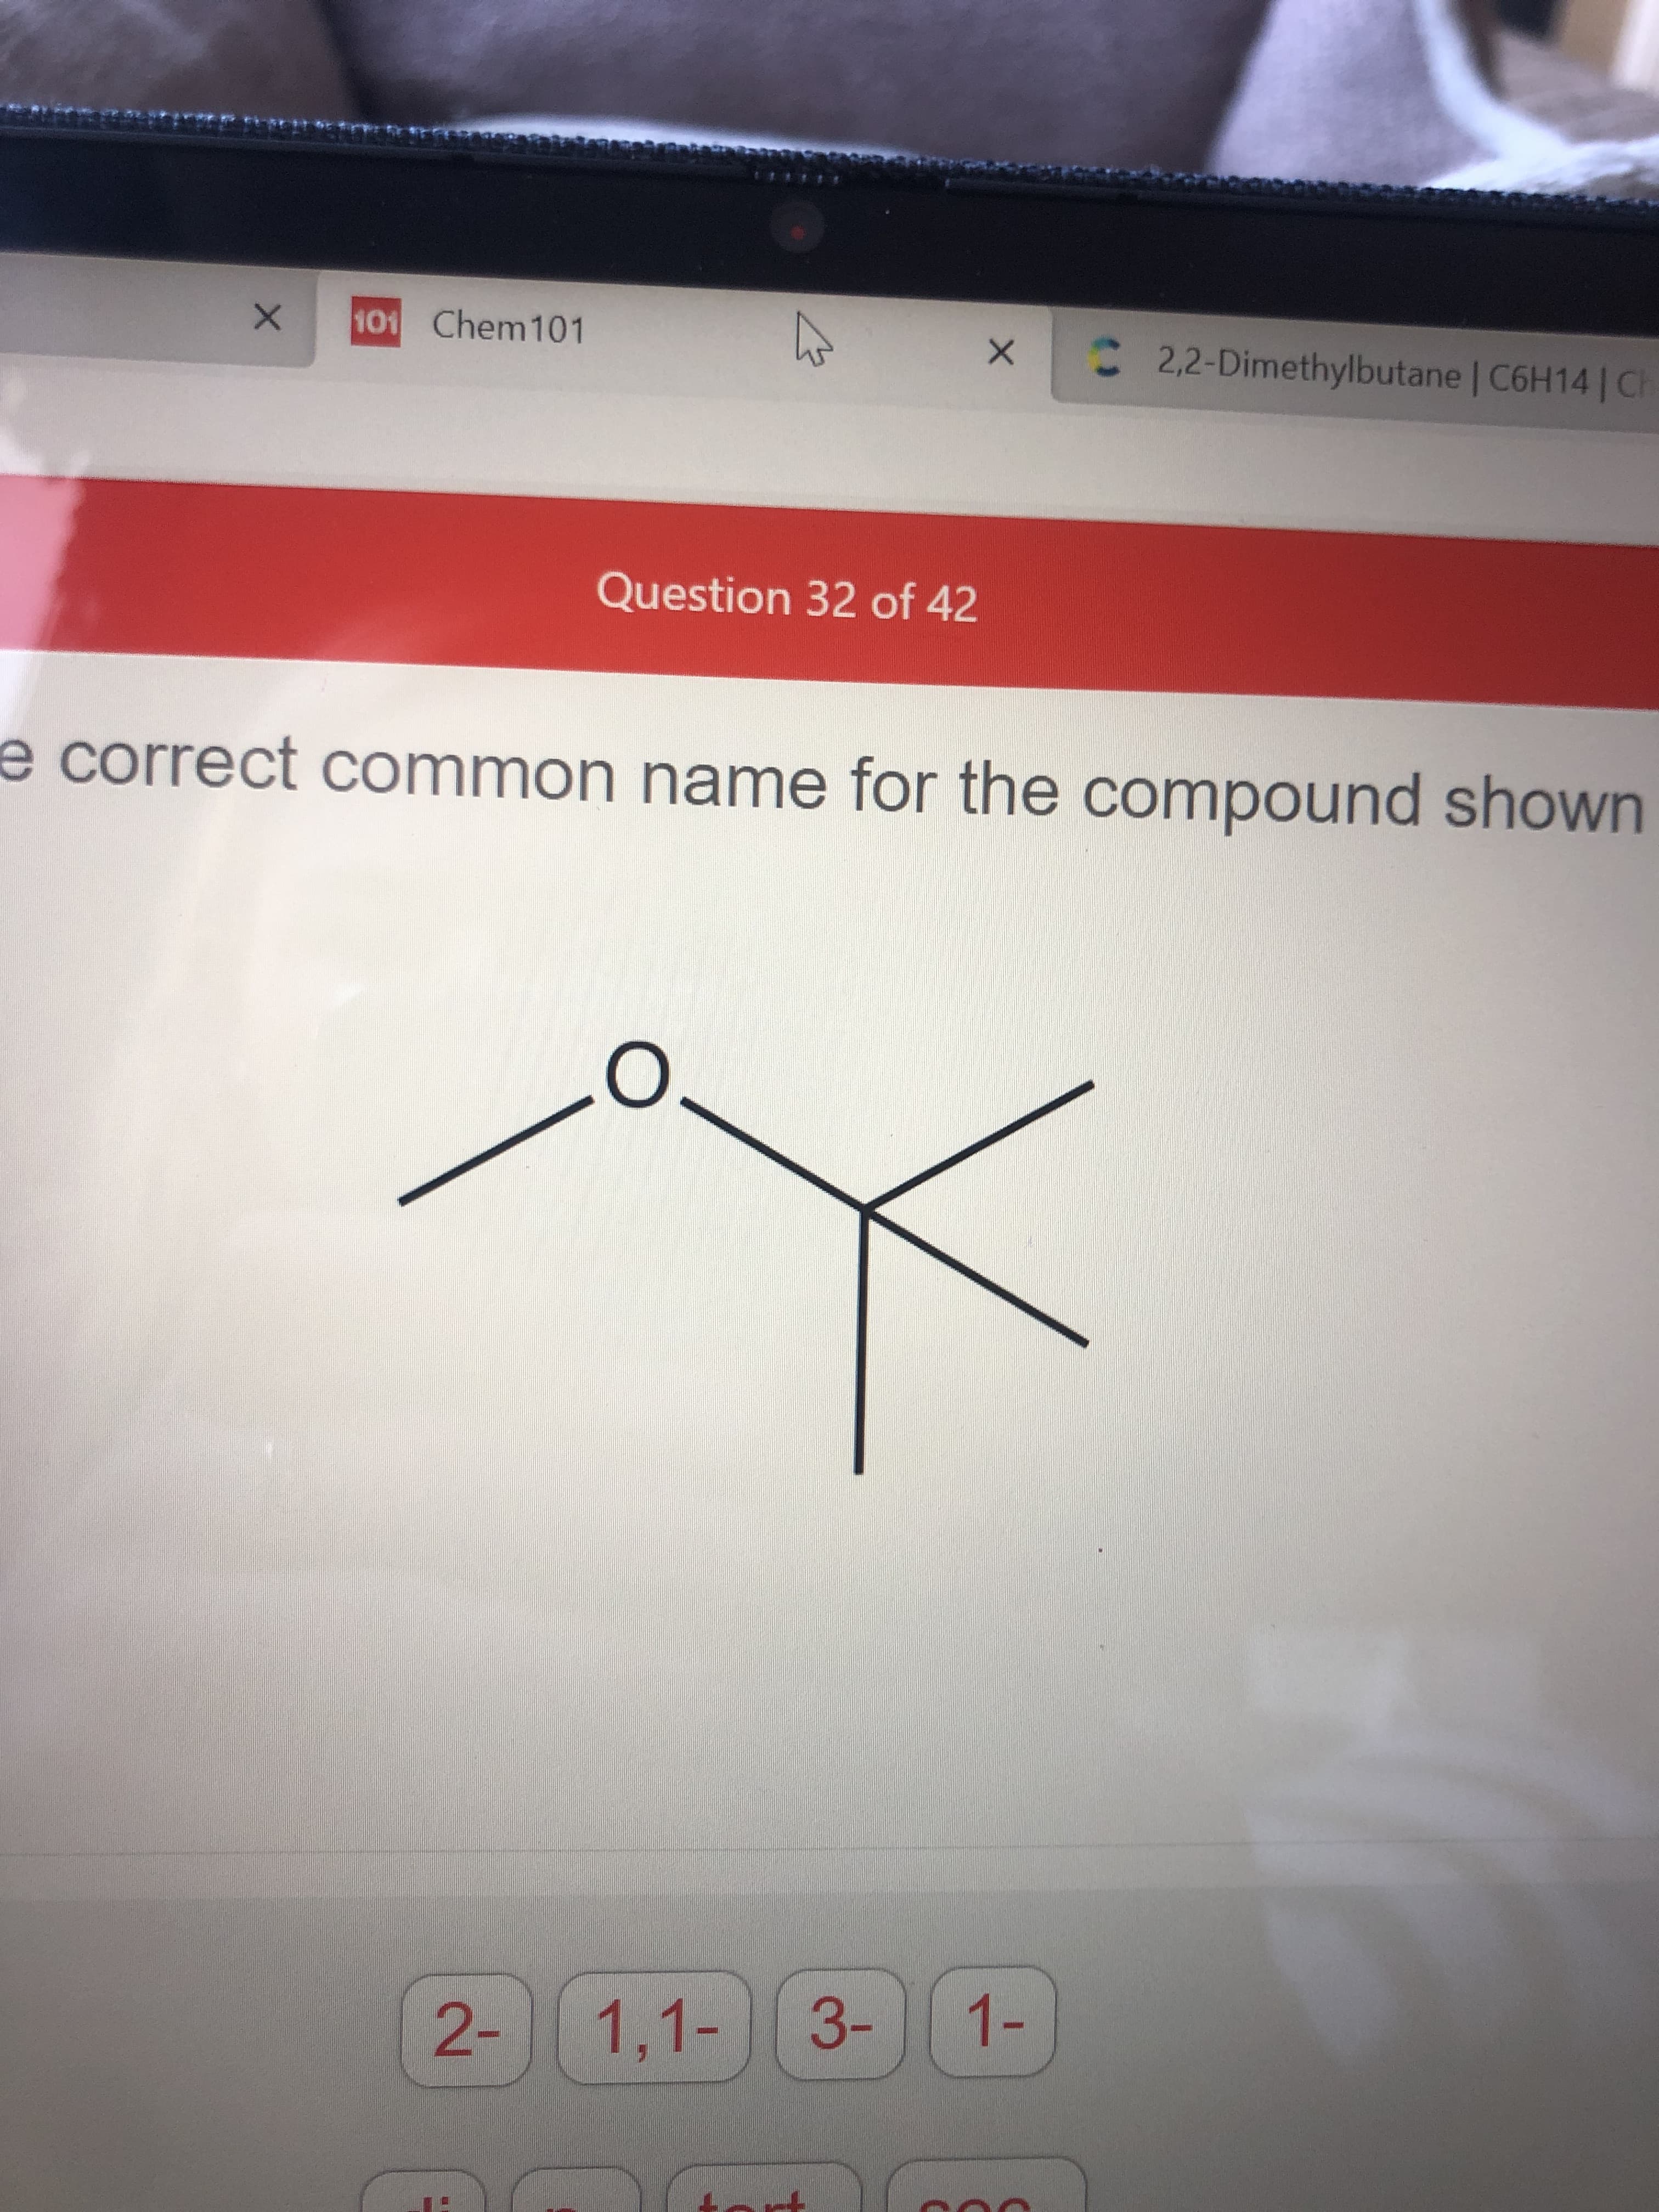 è correct common name for the compound shown
